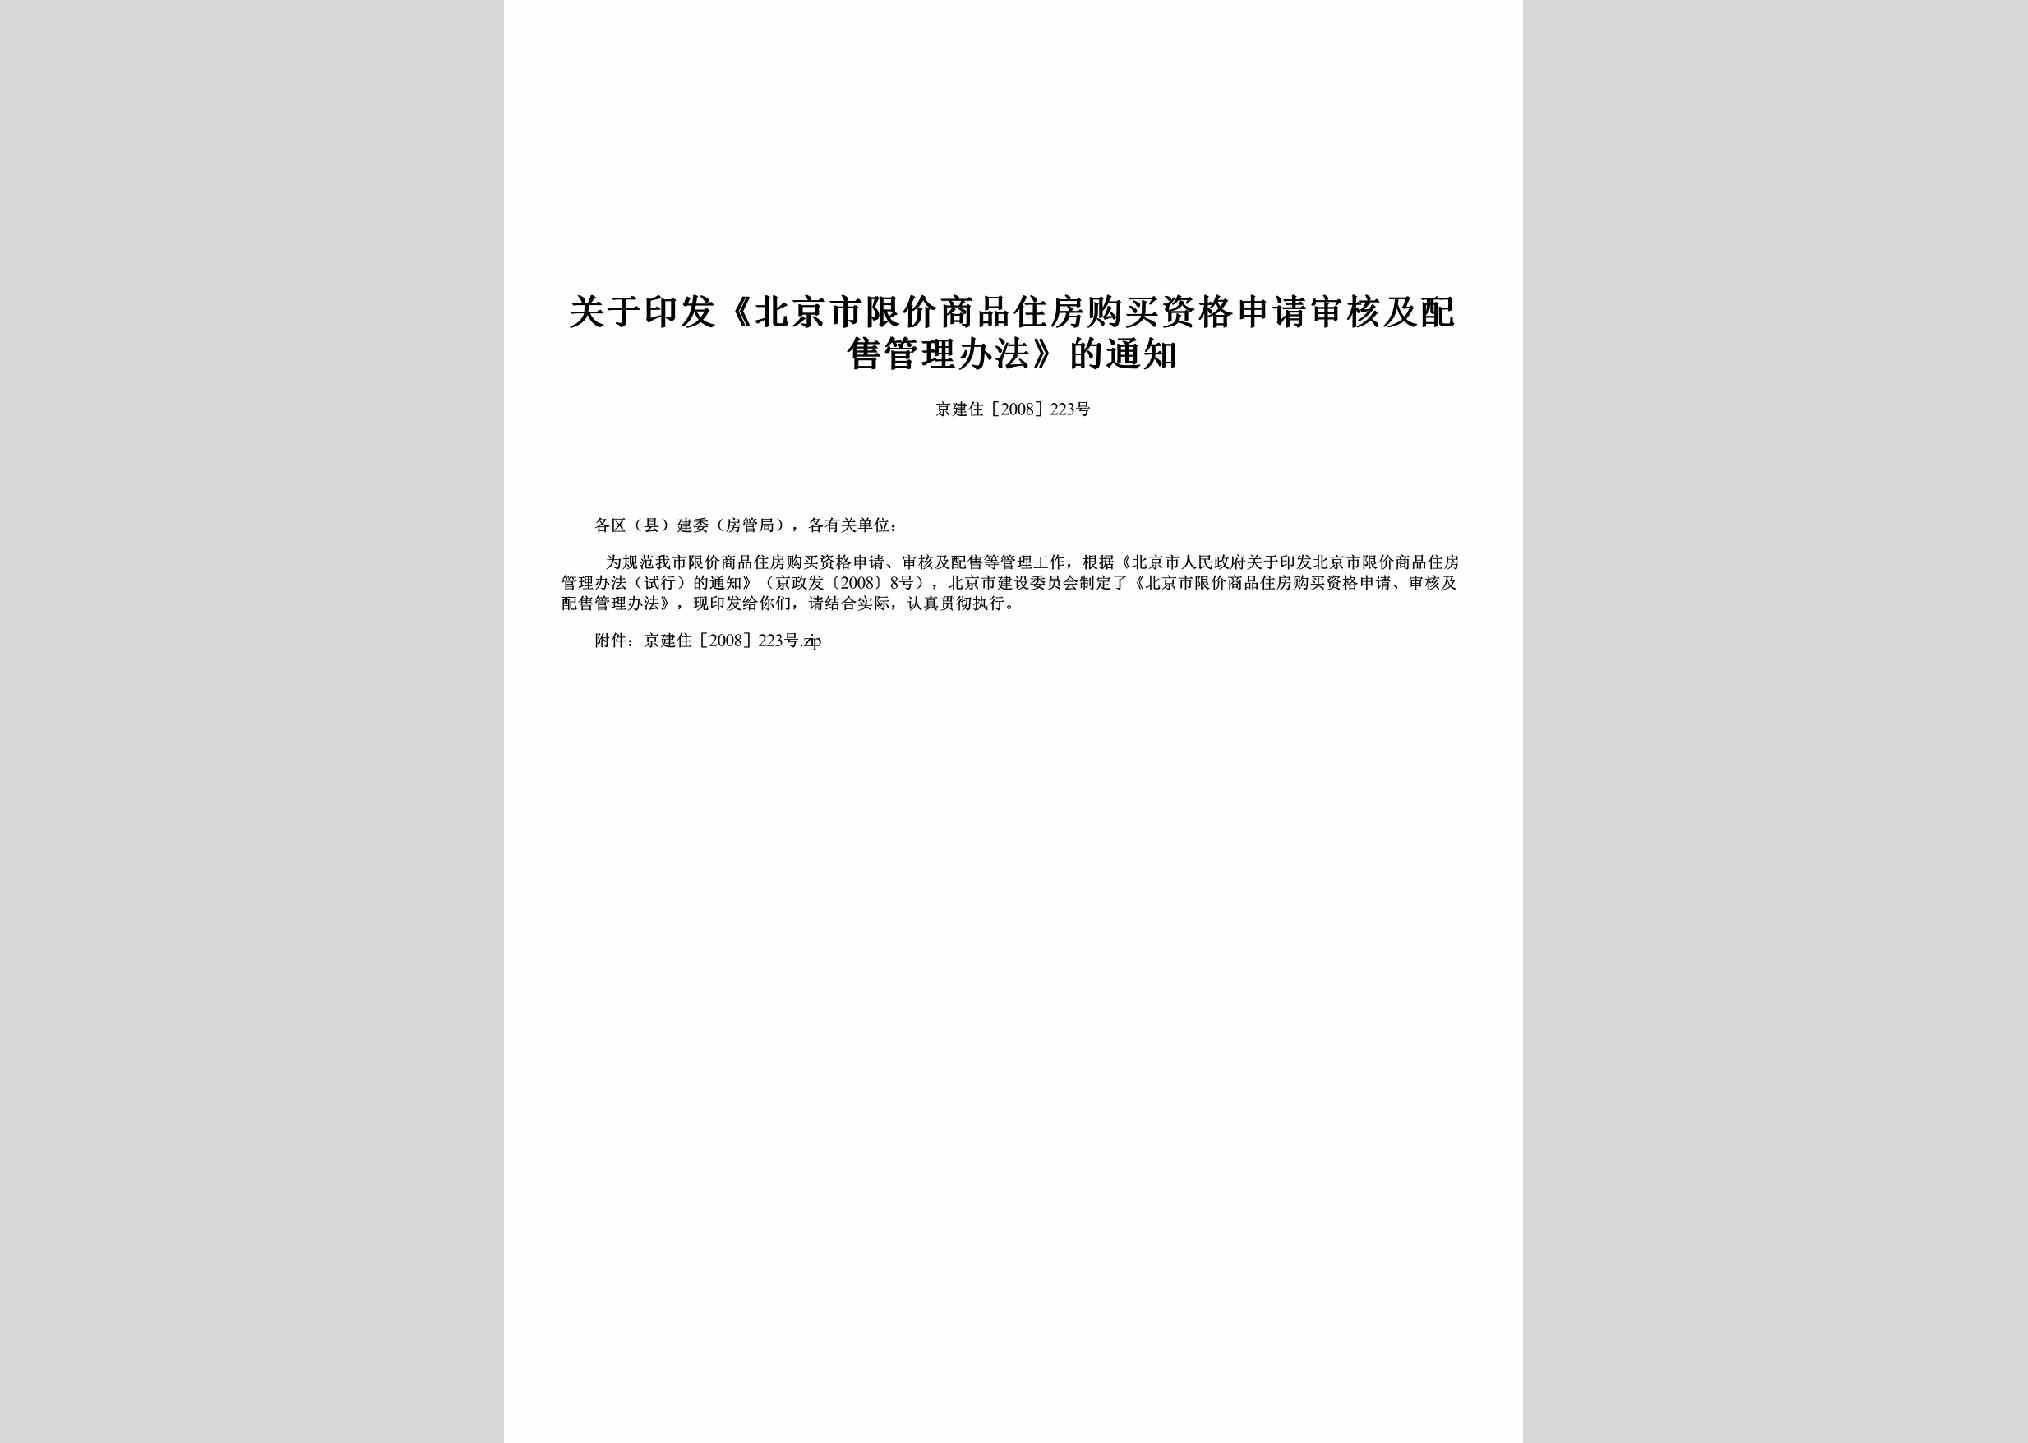 京建住[2008]223号：关于印发《北京市限价商品住房购买资格申请审核及配售管理办法》的通知